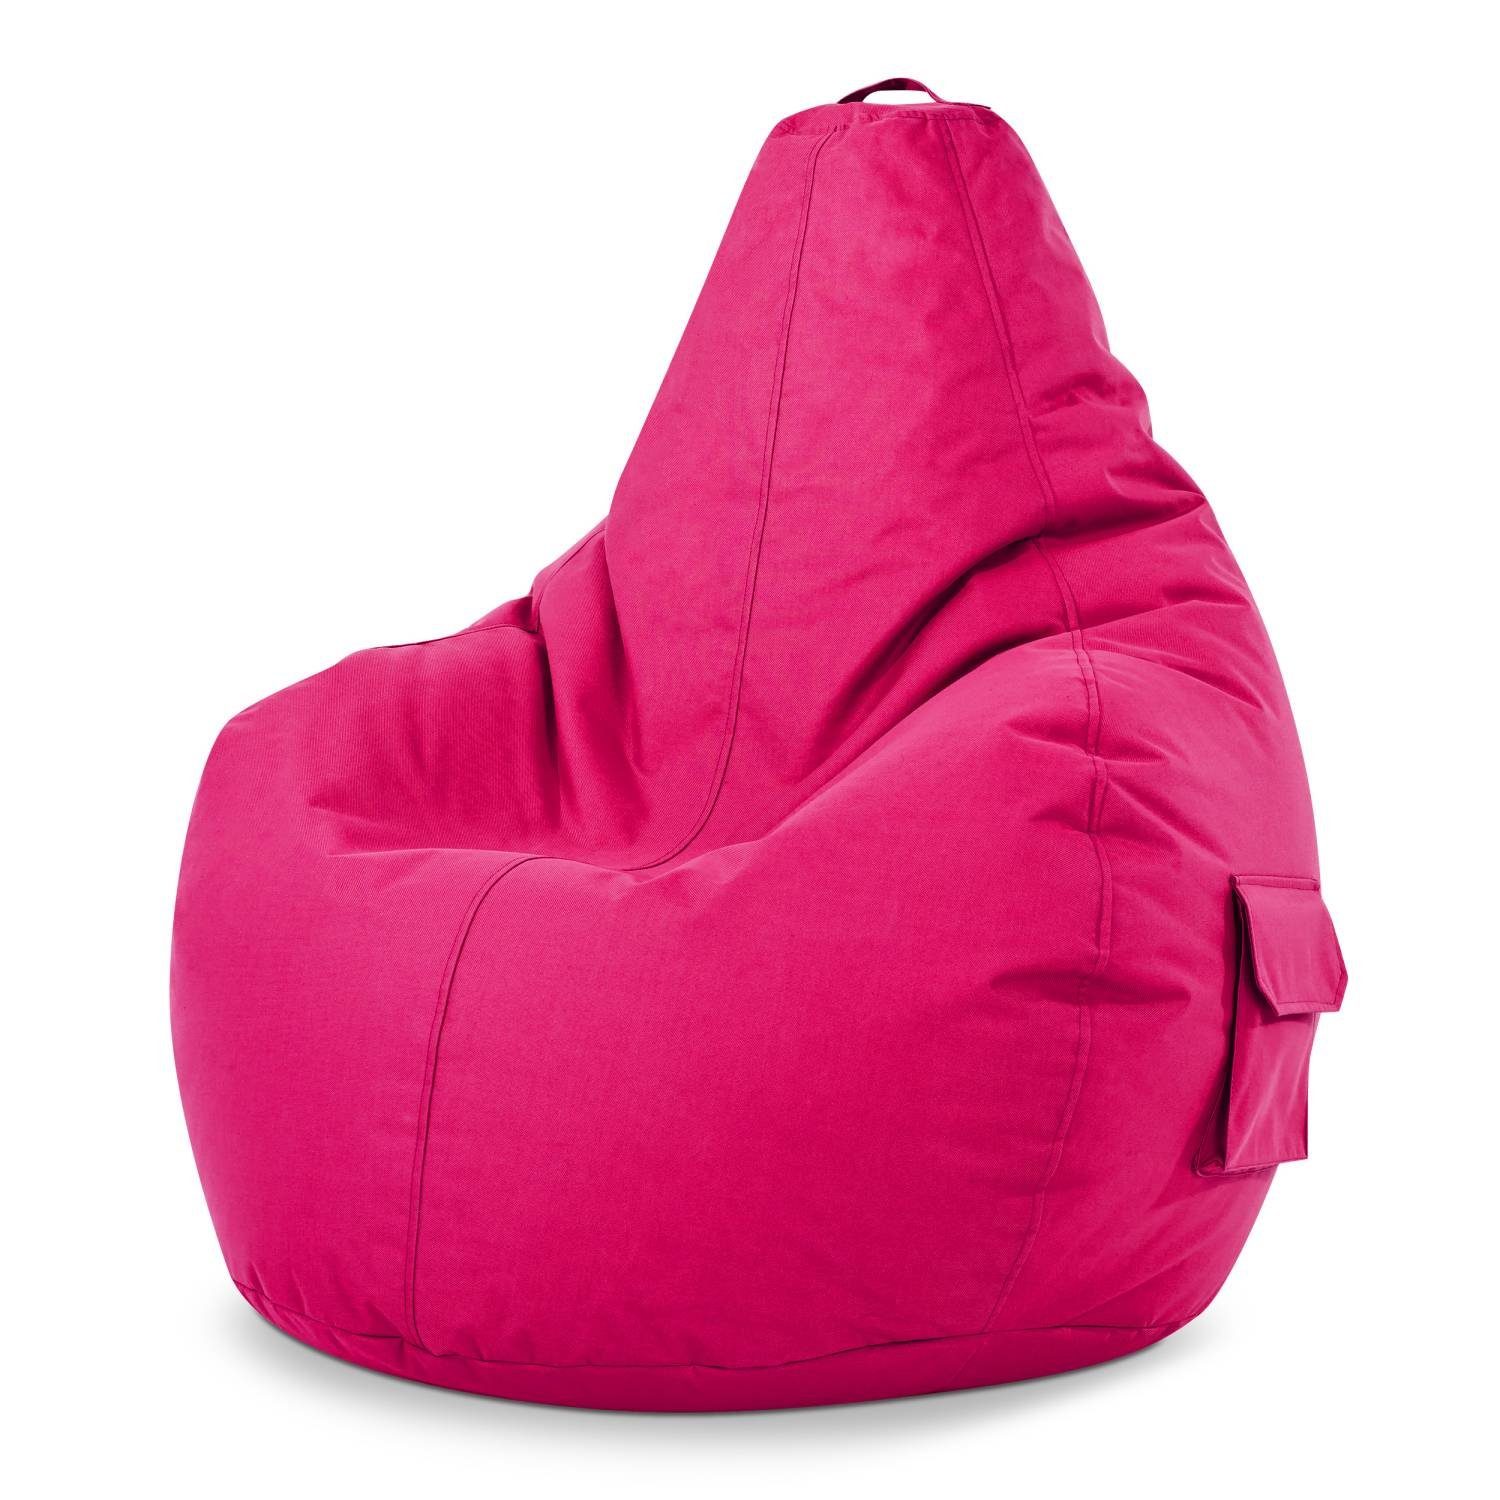 Rosa Sitzsäcke online kaufen » Pinke Sitzsäcke | OTTO